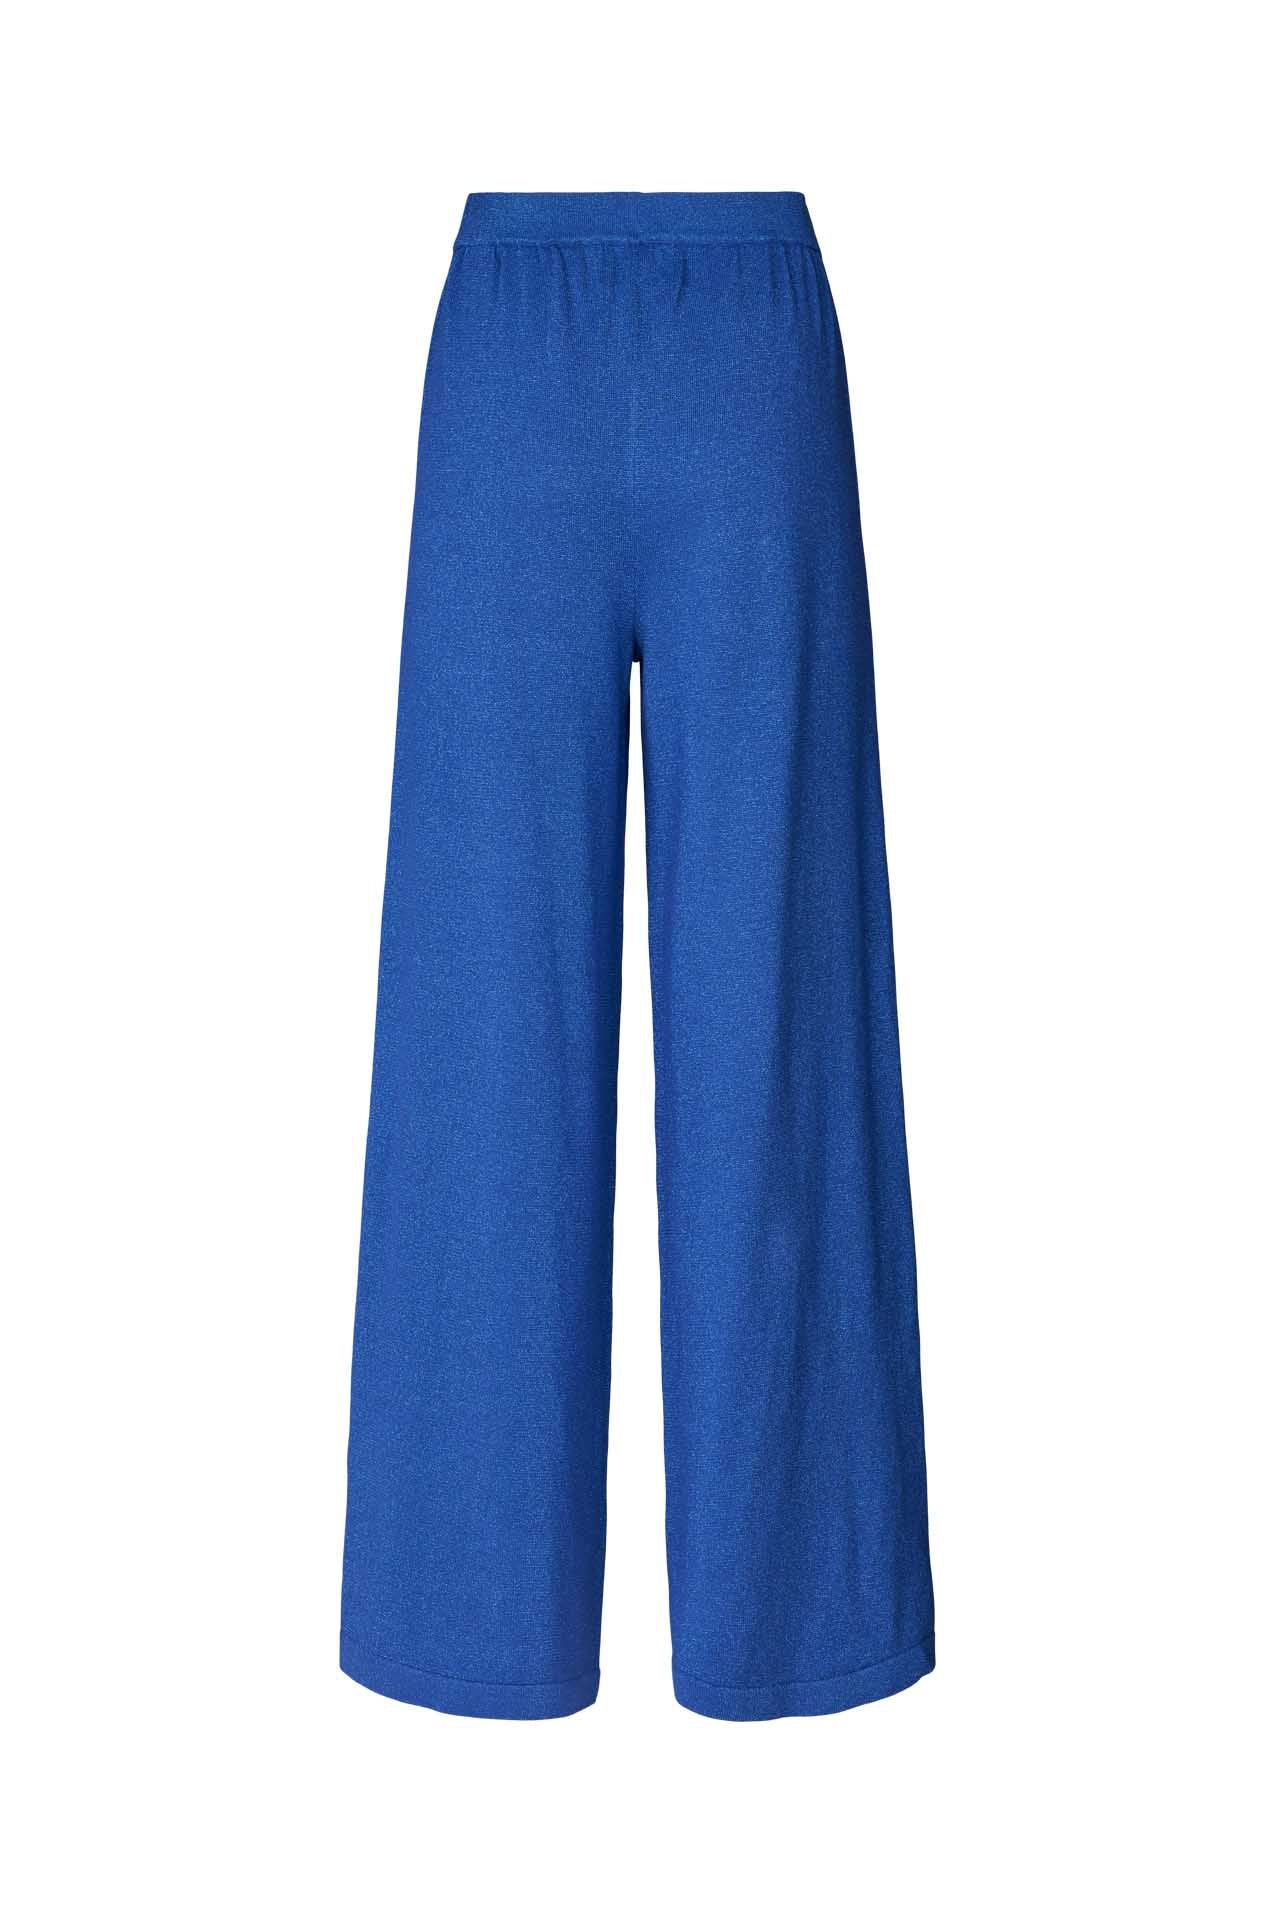 Lollys Laundry Agadir  Pants Pants 97 Neon Blue